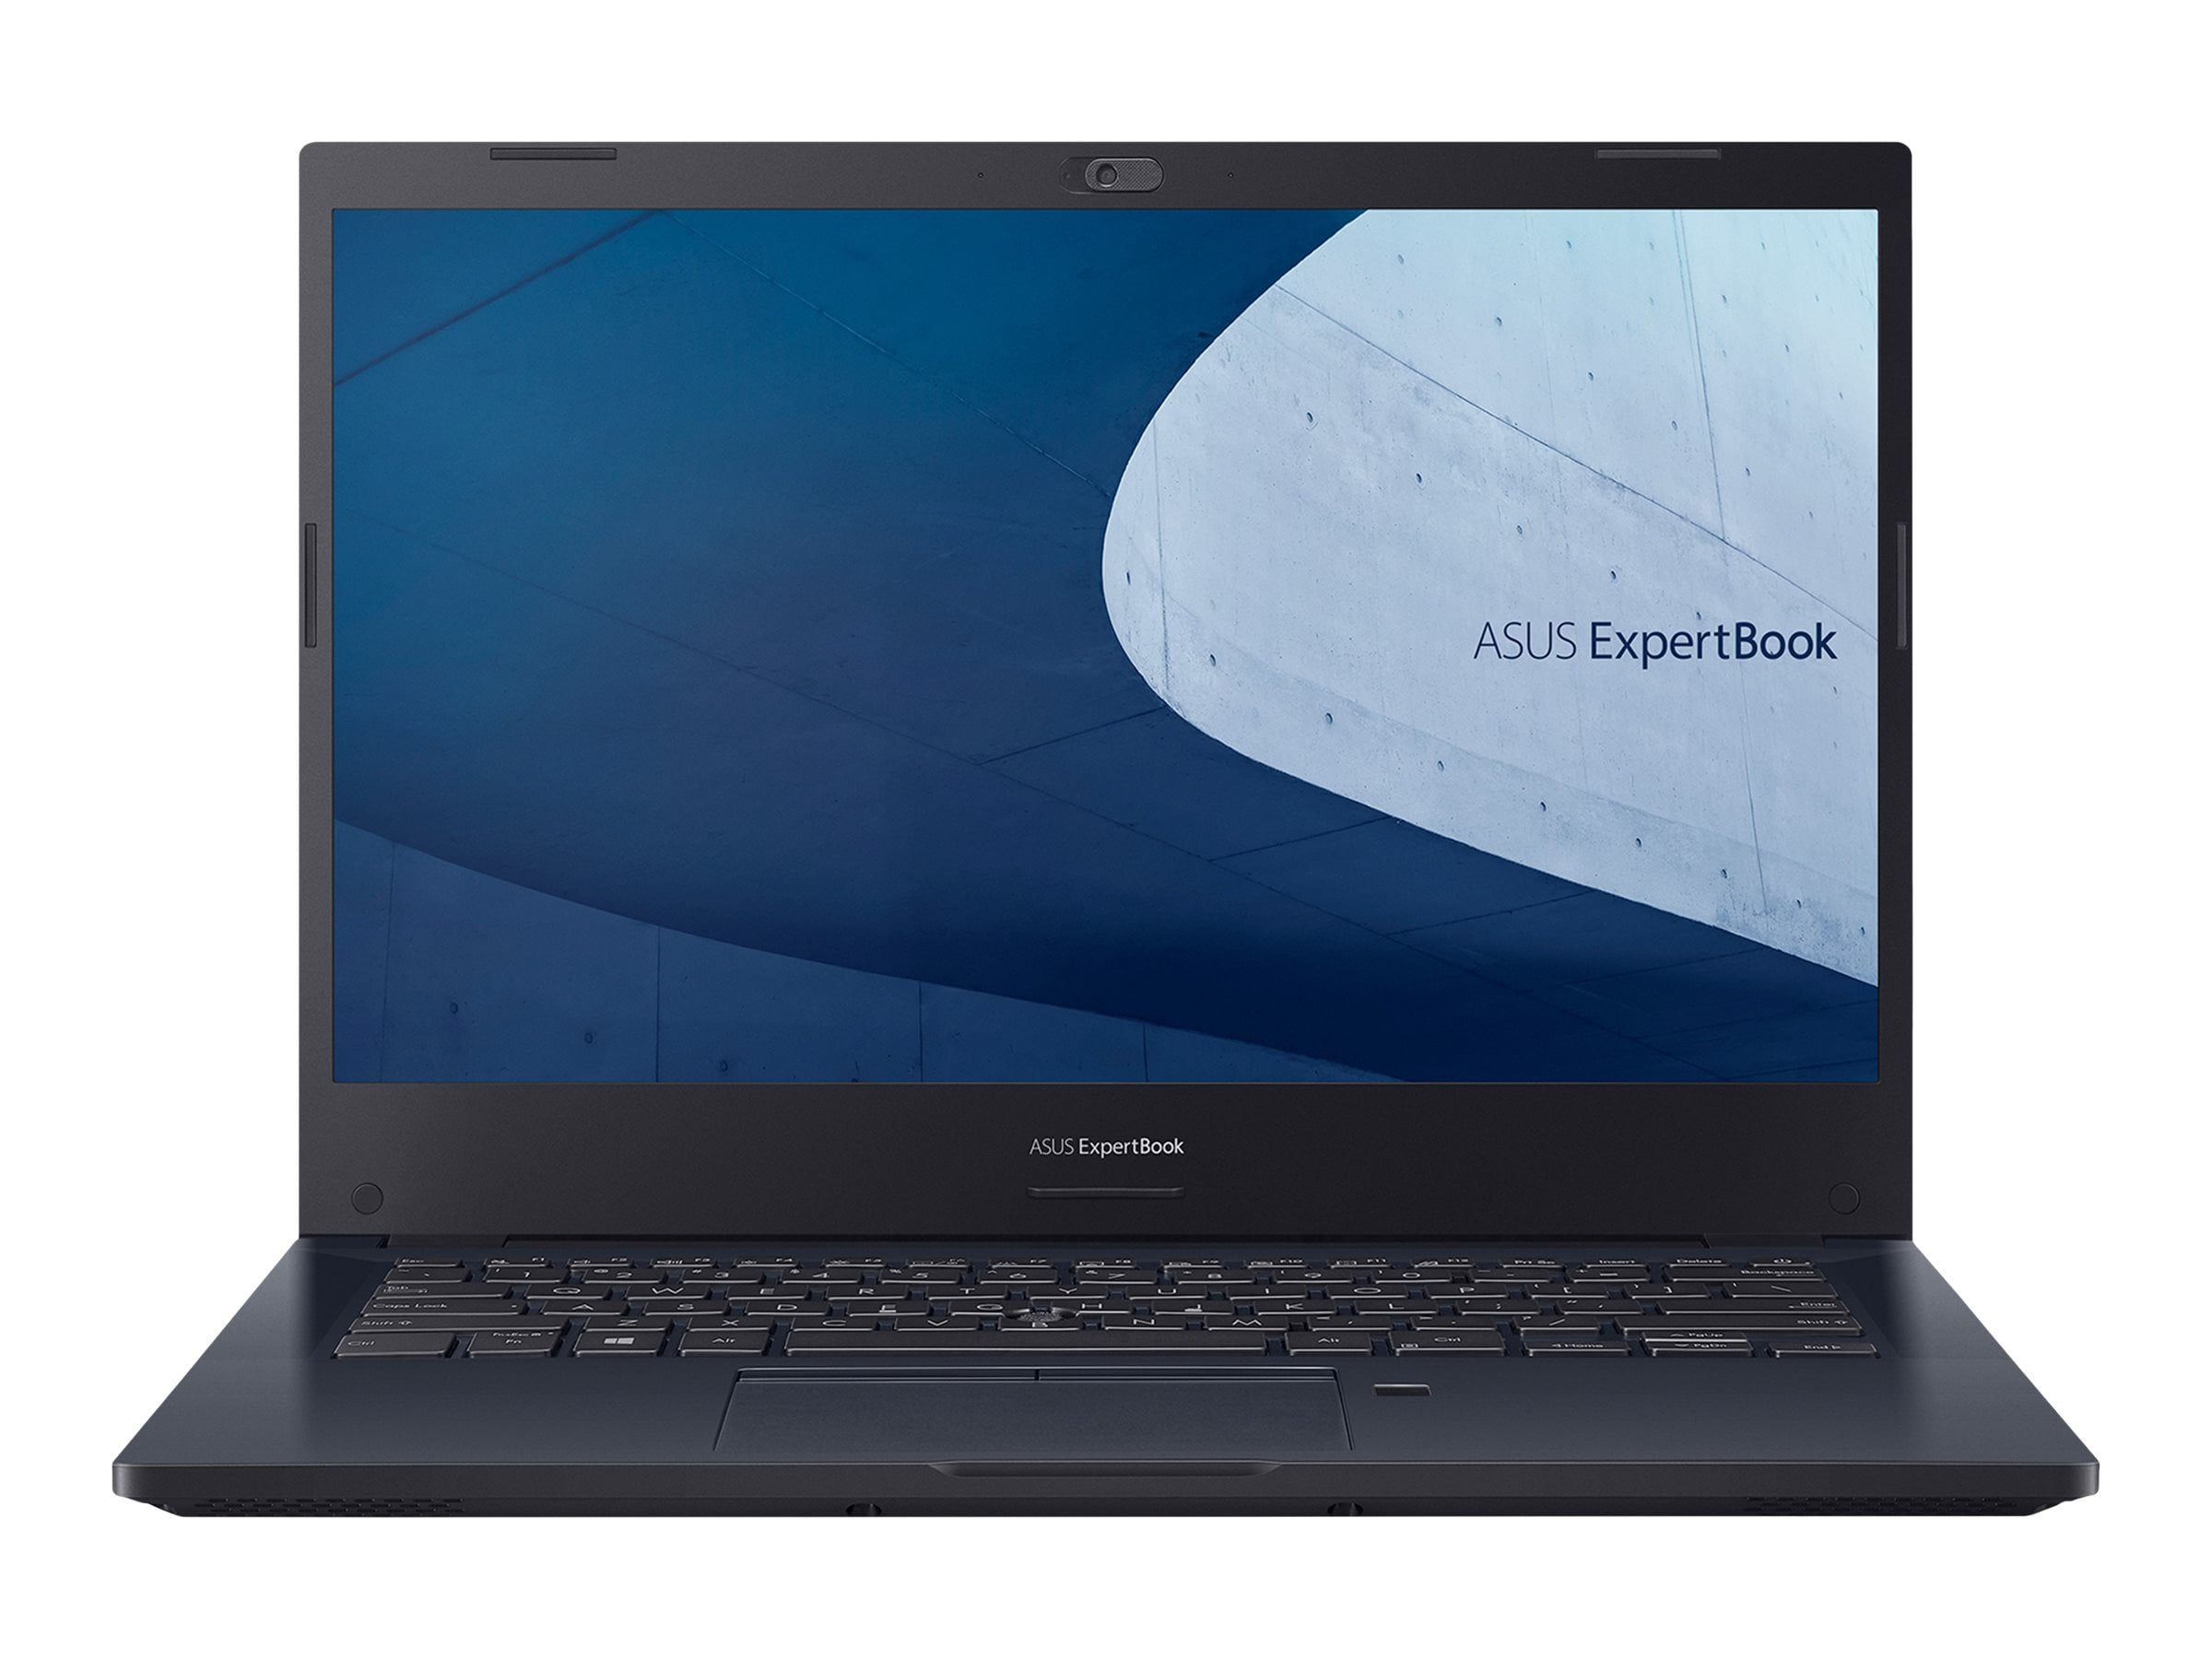 ASUS ExpertBook P2 P2451FA-XH33 - 180-degree hinge design - Intel